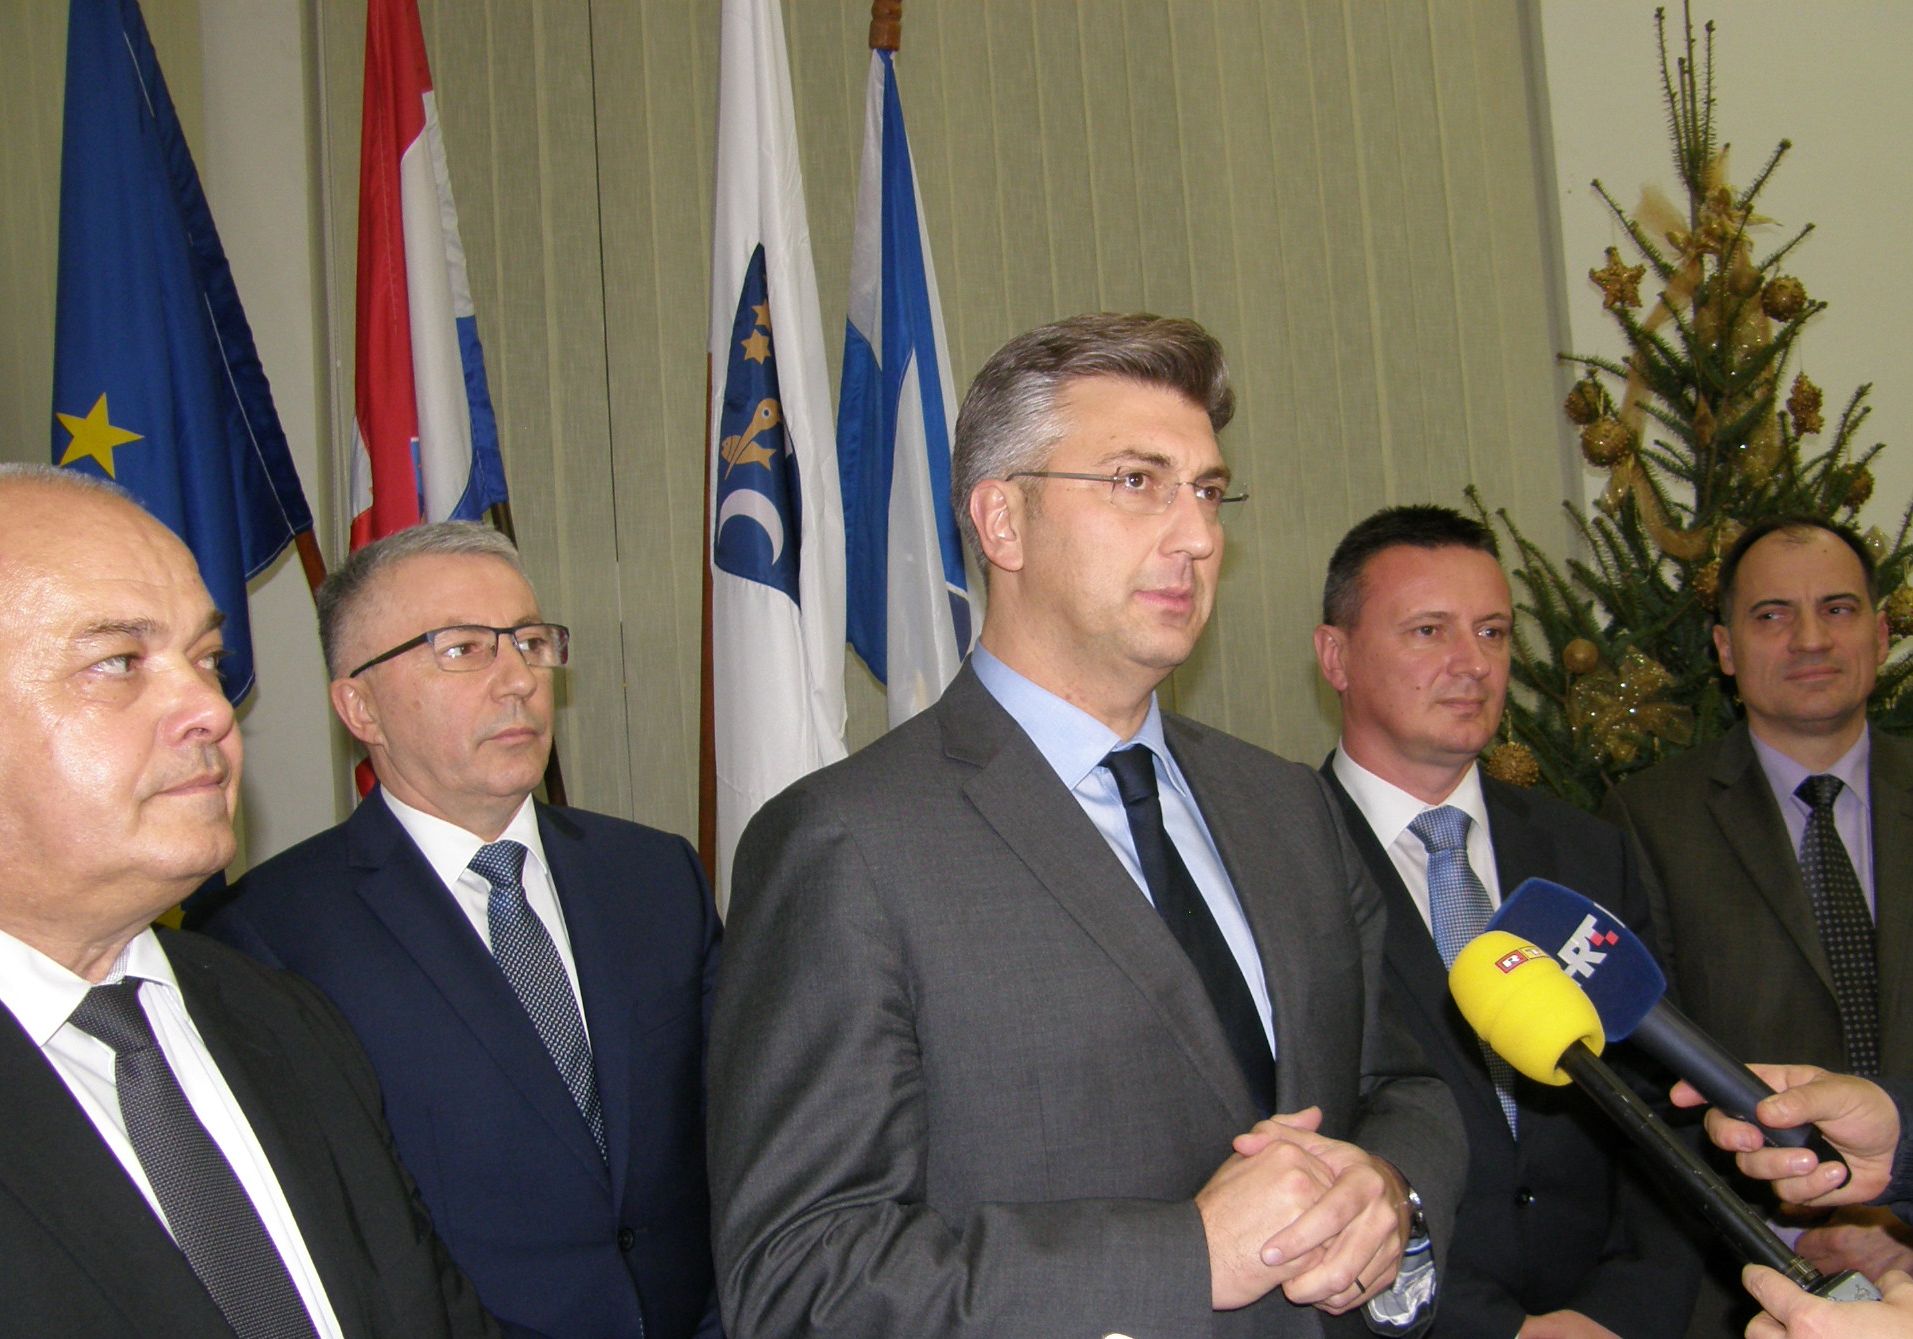 Premijer Plenković u Slavonskom Brodu: onečišćenje zraka prioritetan je problem, Vlada će poduzeti sve da se to što prije riješi